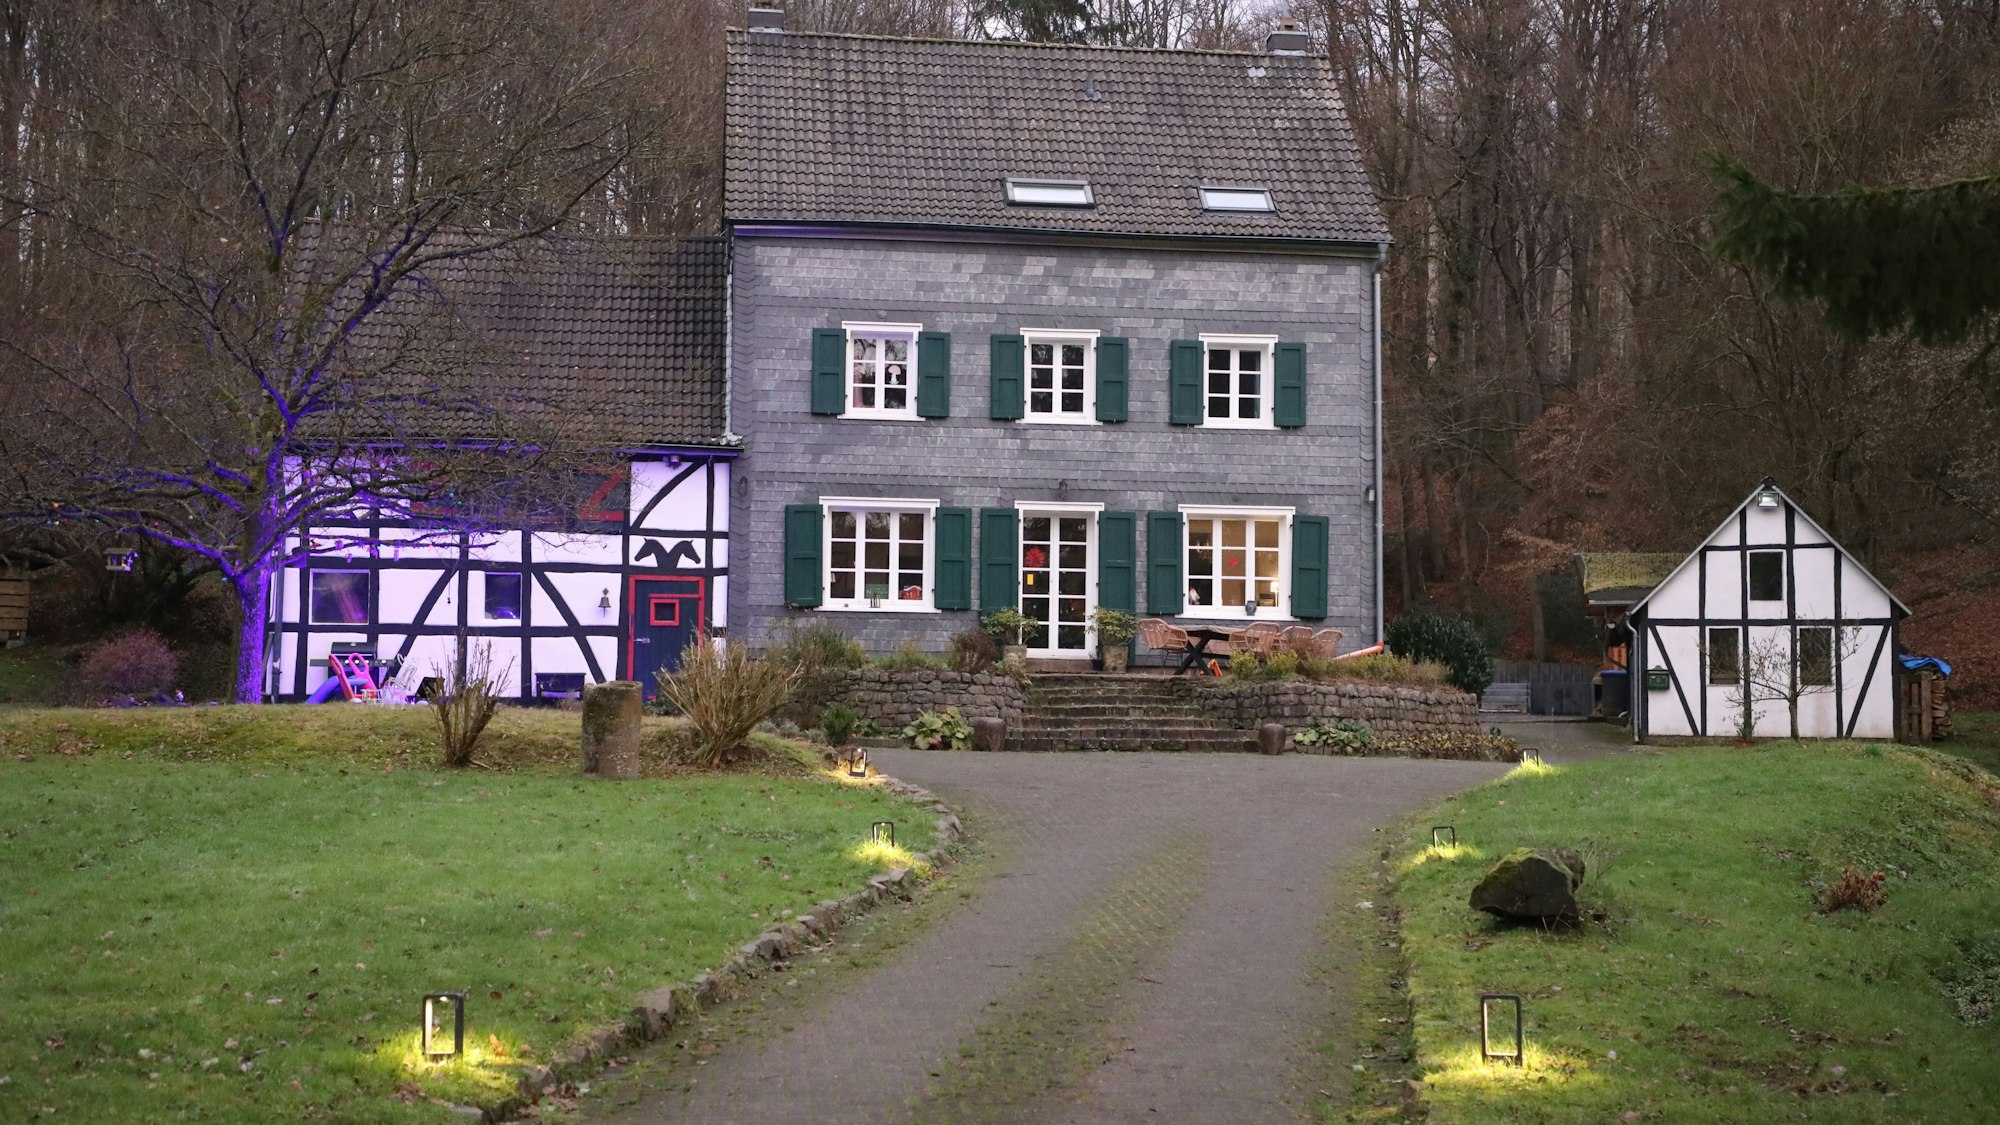 Erleuchtetes Haus im Volbachtal bei Herkenrath.